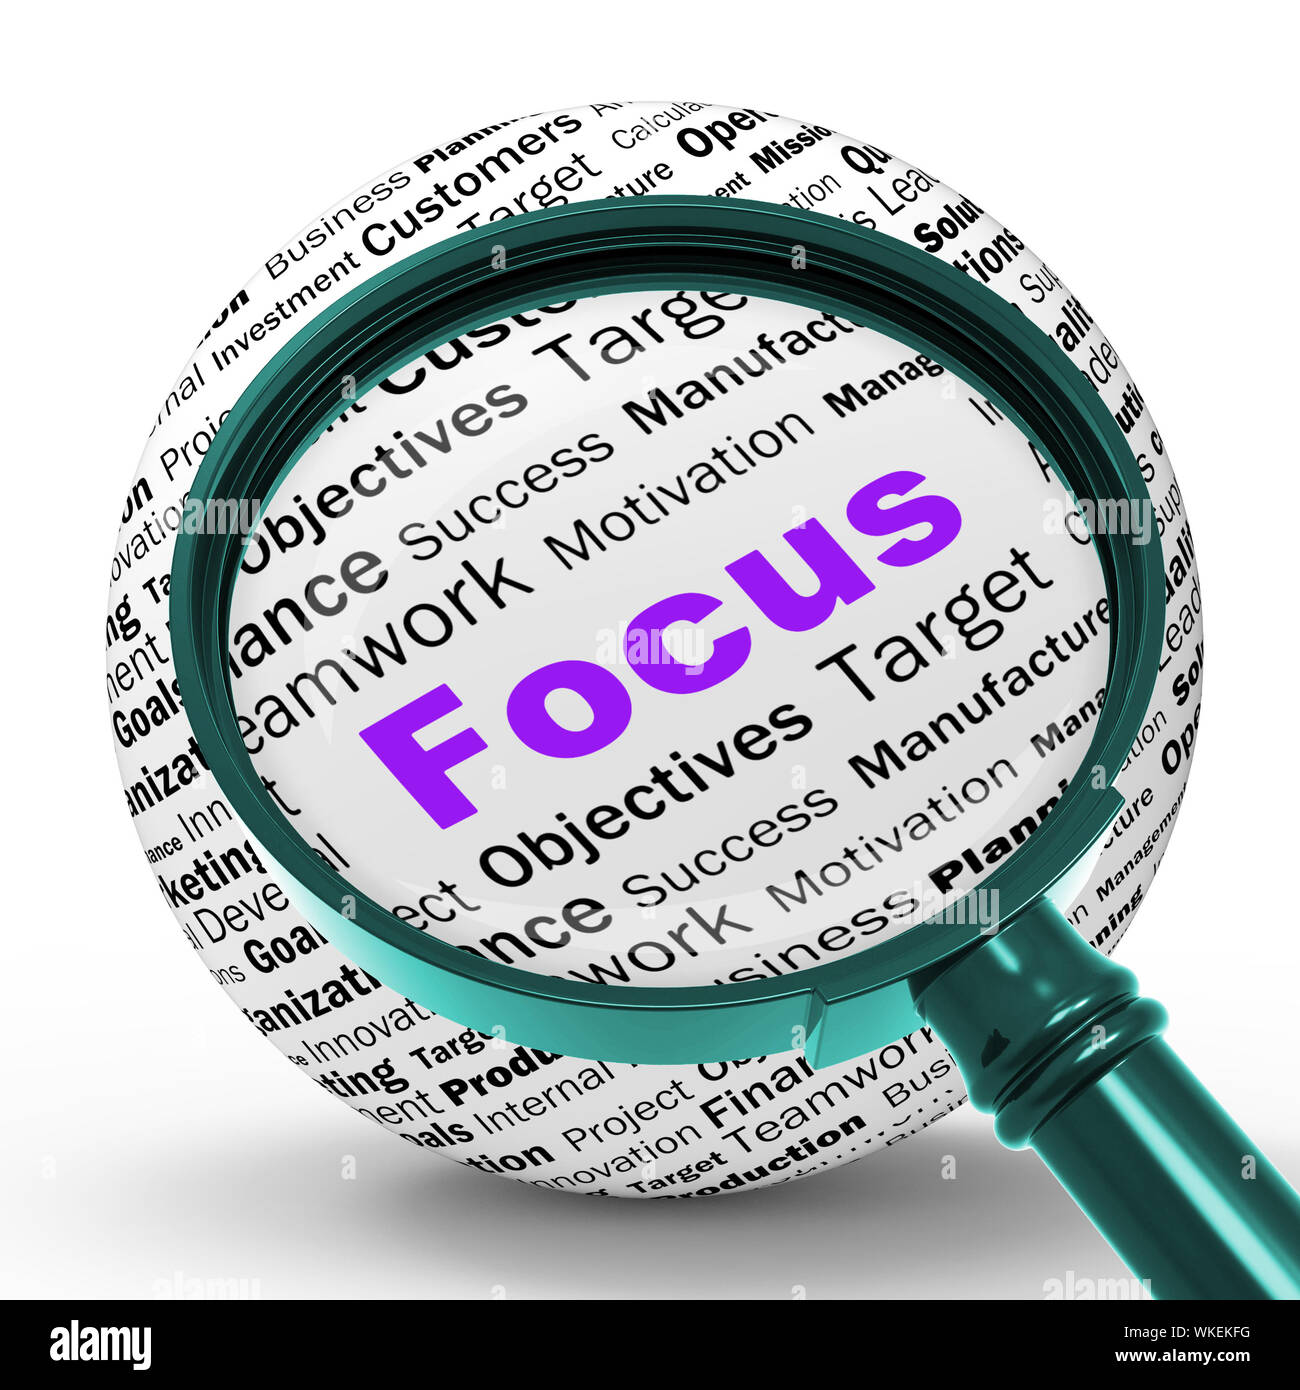 Fokus-Lupe-Definition zeigt Konzentration mit dem Ziel und Ausrichtung  Stockfotografie - Alamy